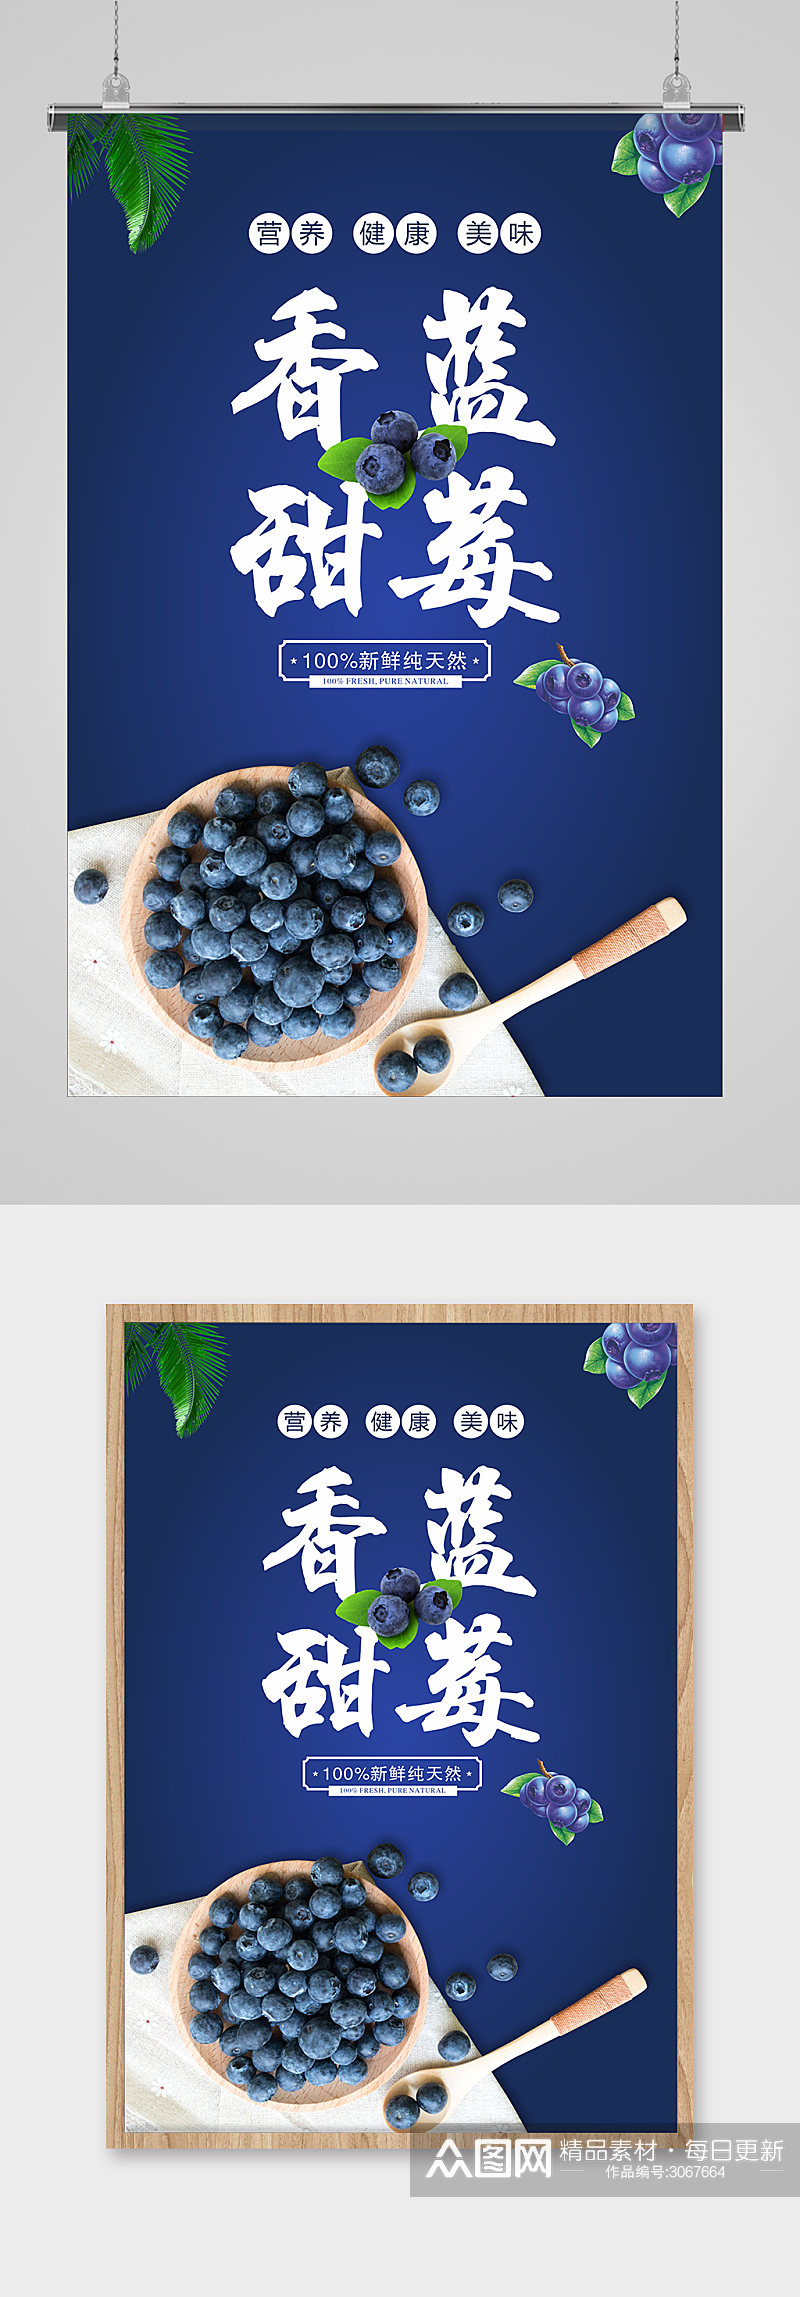 大气香甜蓝莓海报素材